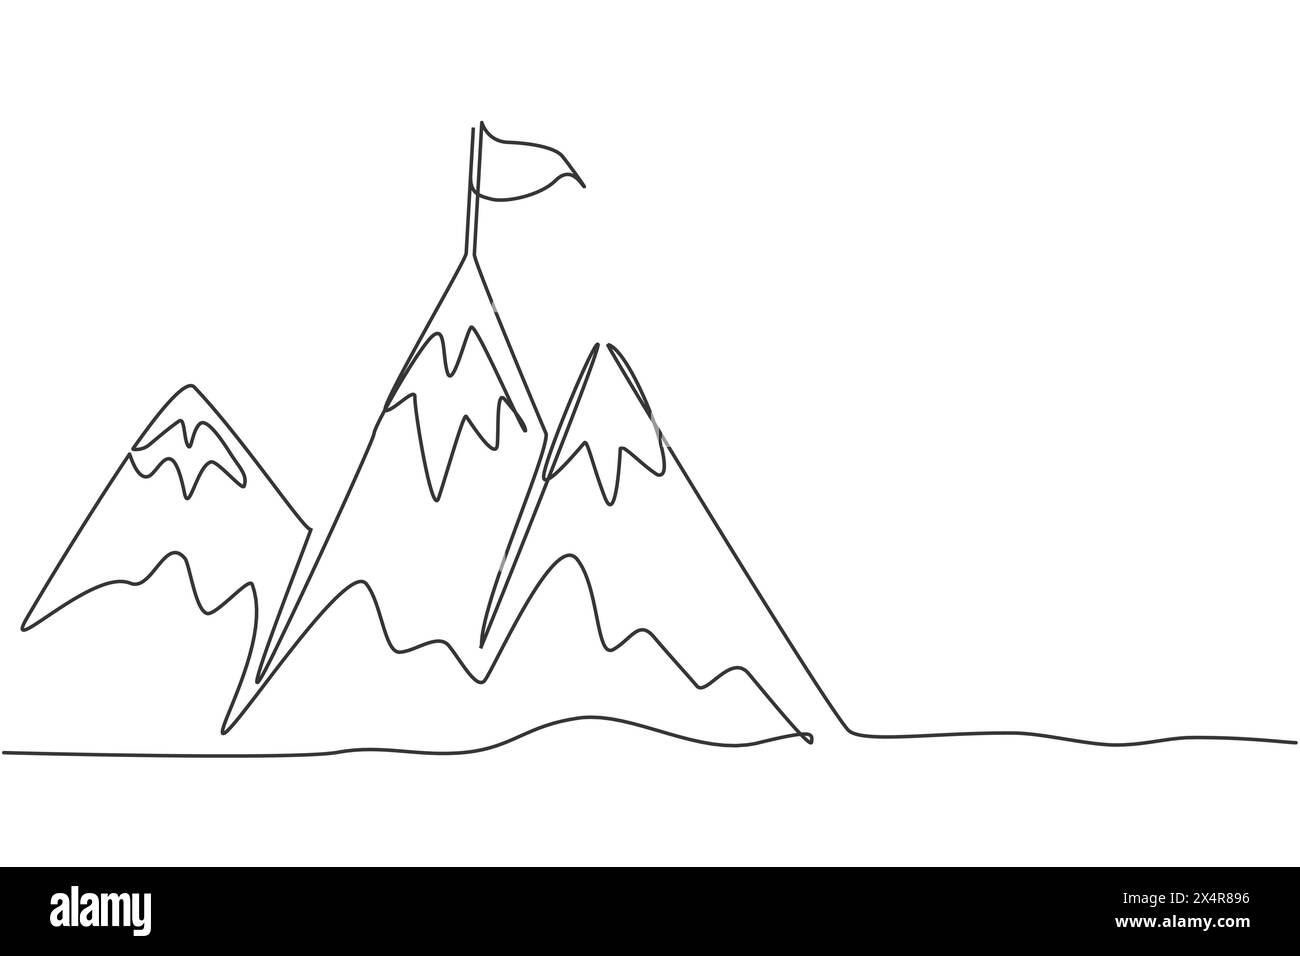 Einzelne durchgehende Linie, die Berge mit Zielflagge oben zeichnet. Das Geschäftsziel auf dem Hügel erreichen und klettern. Minimalismus Konzept dynamisch Stock Vektor